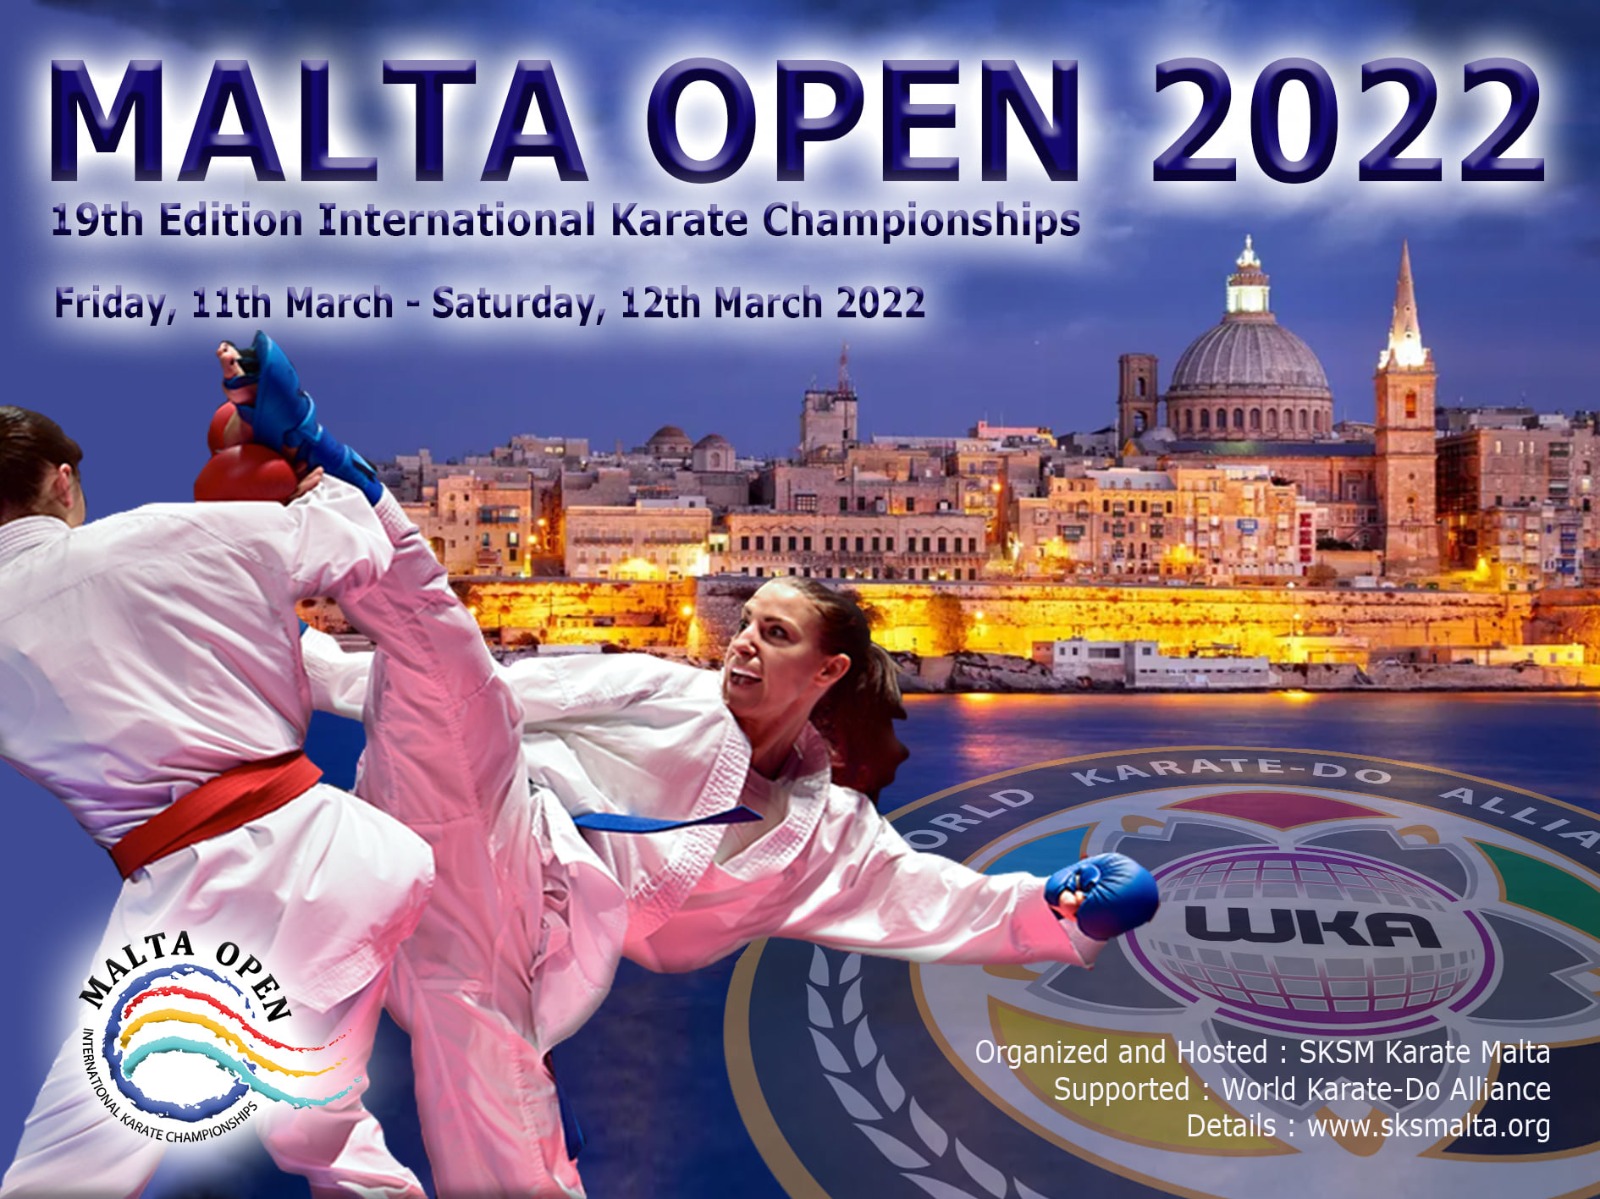 Malta Open 2022